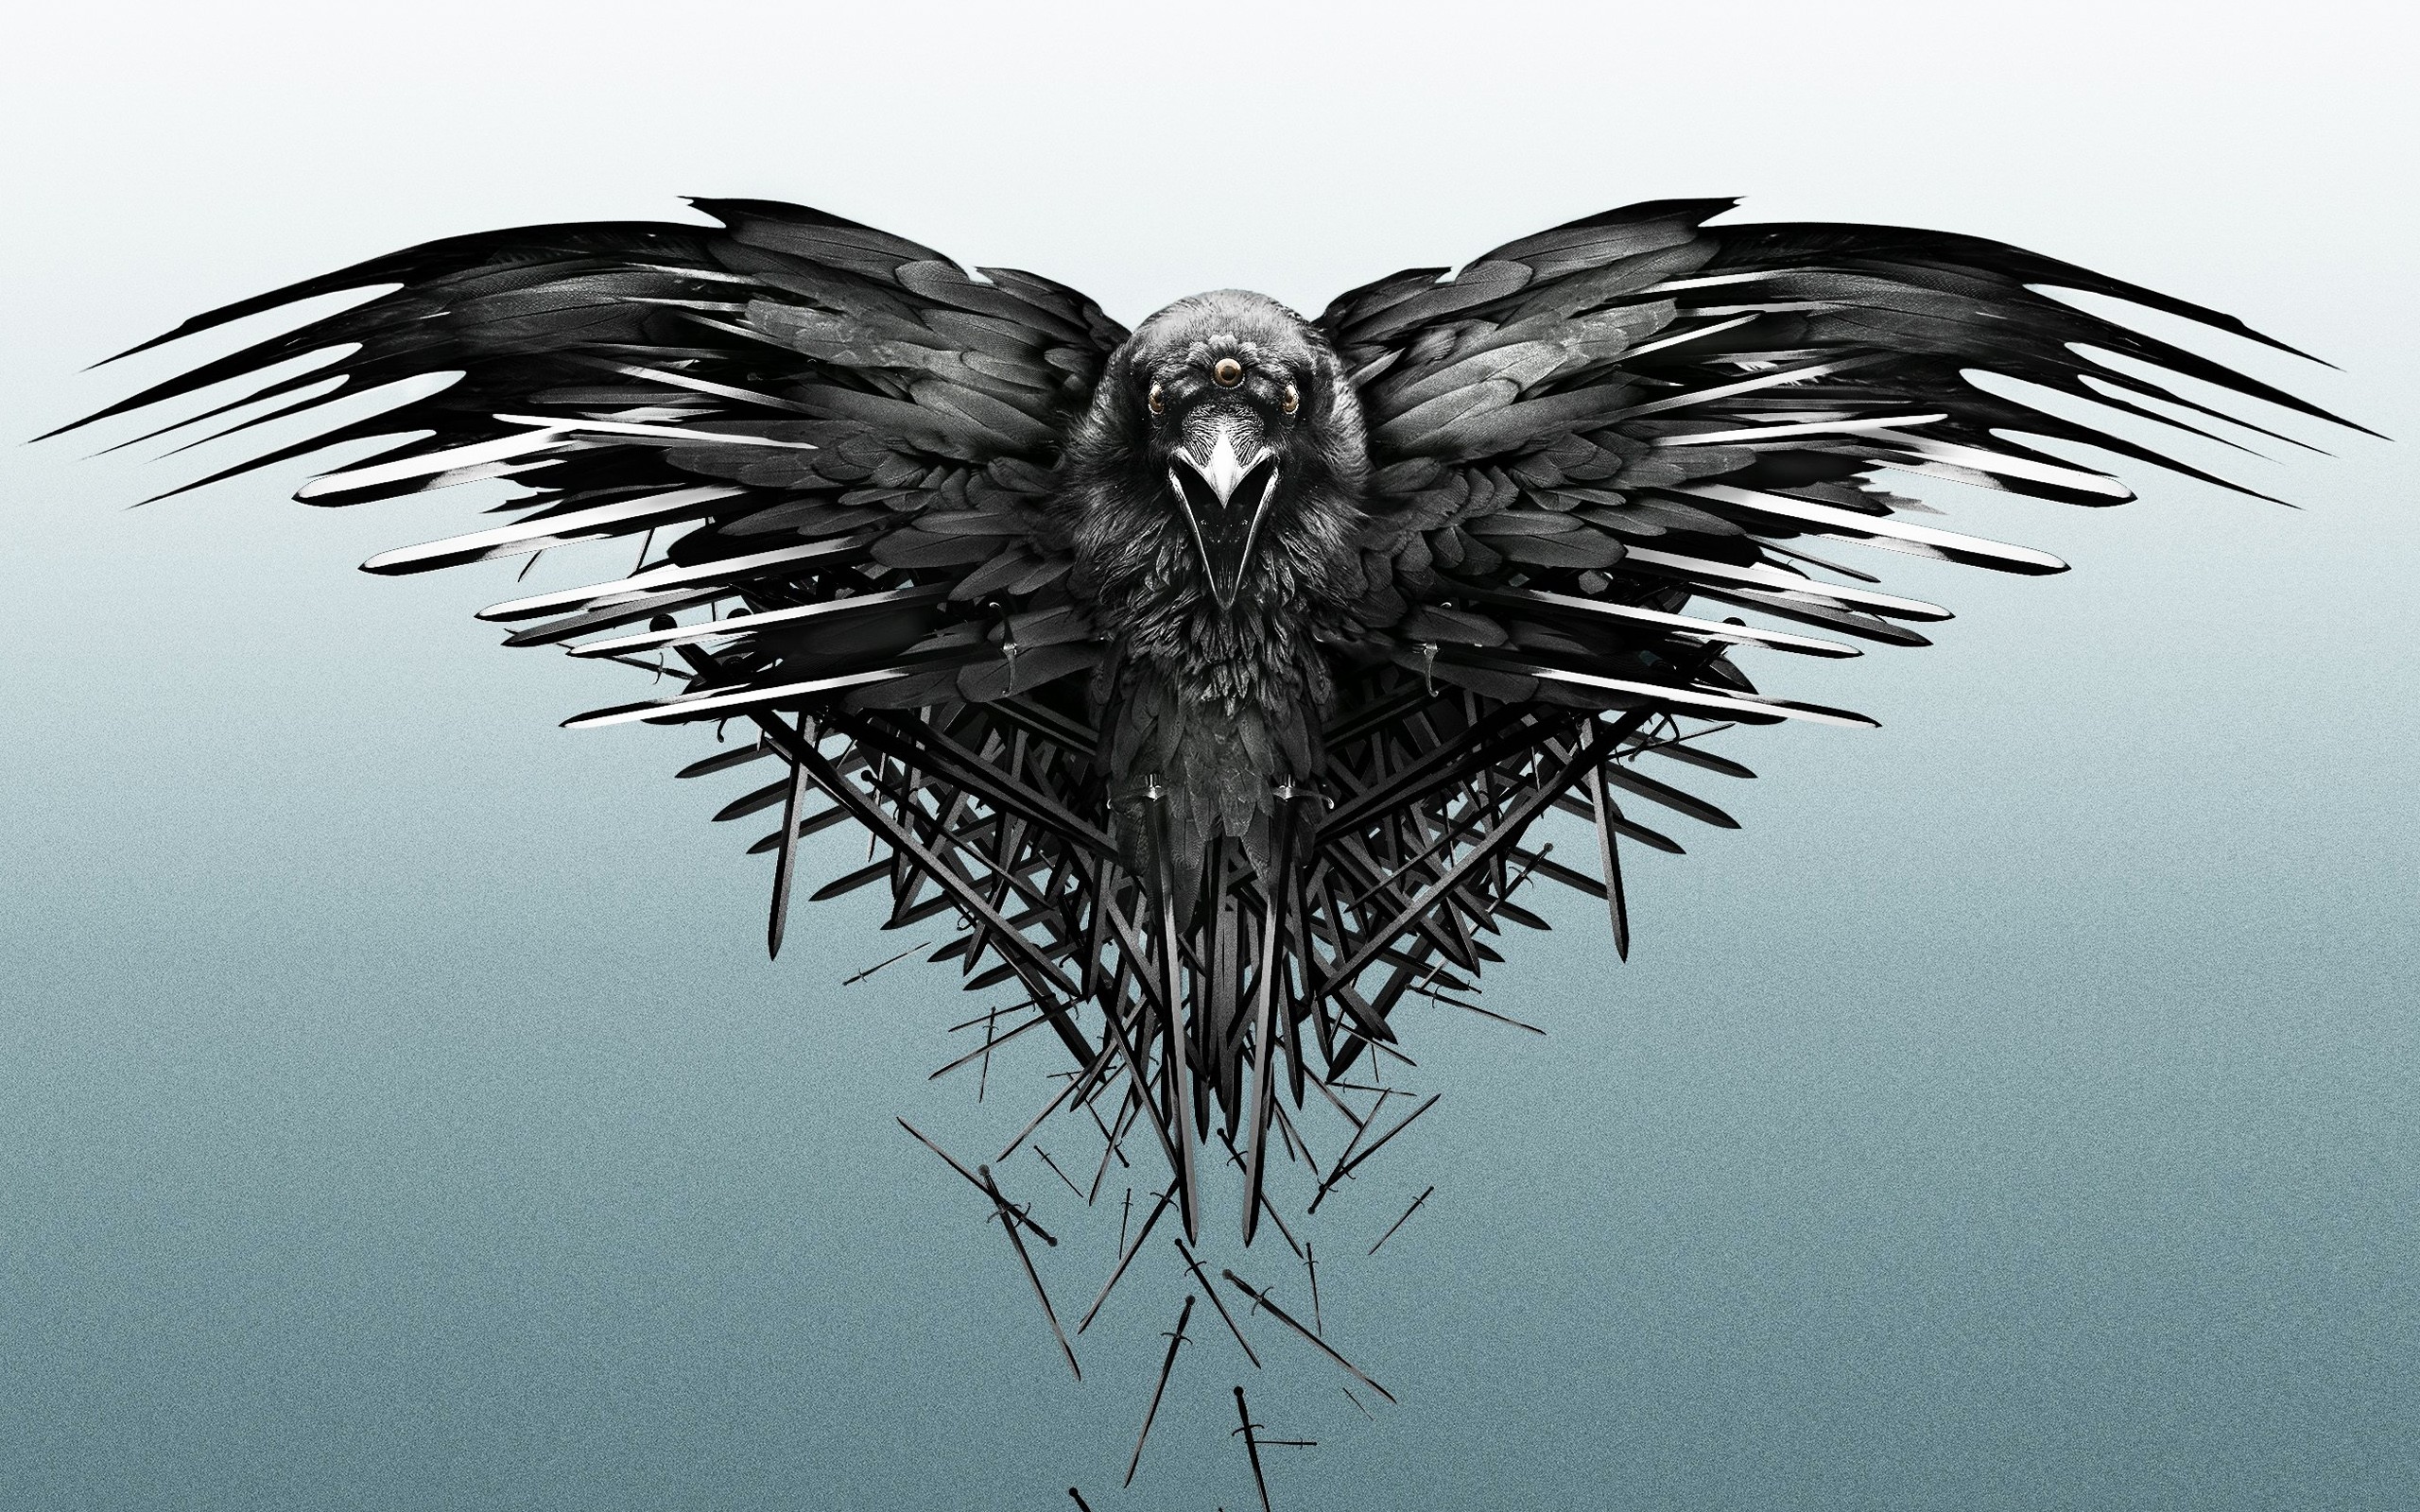 General 2560x1600 Game of Thrones digital art TV series artwork simple background